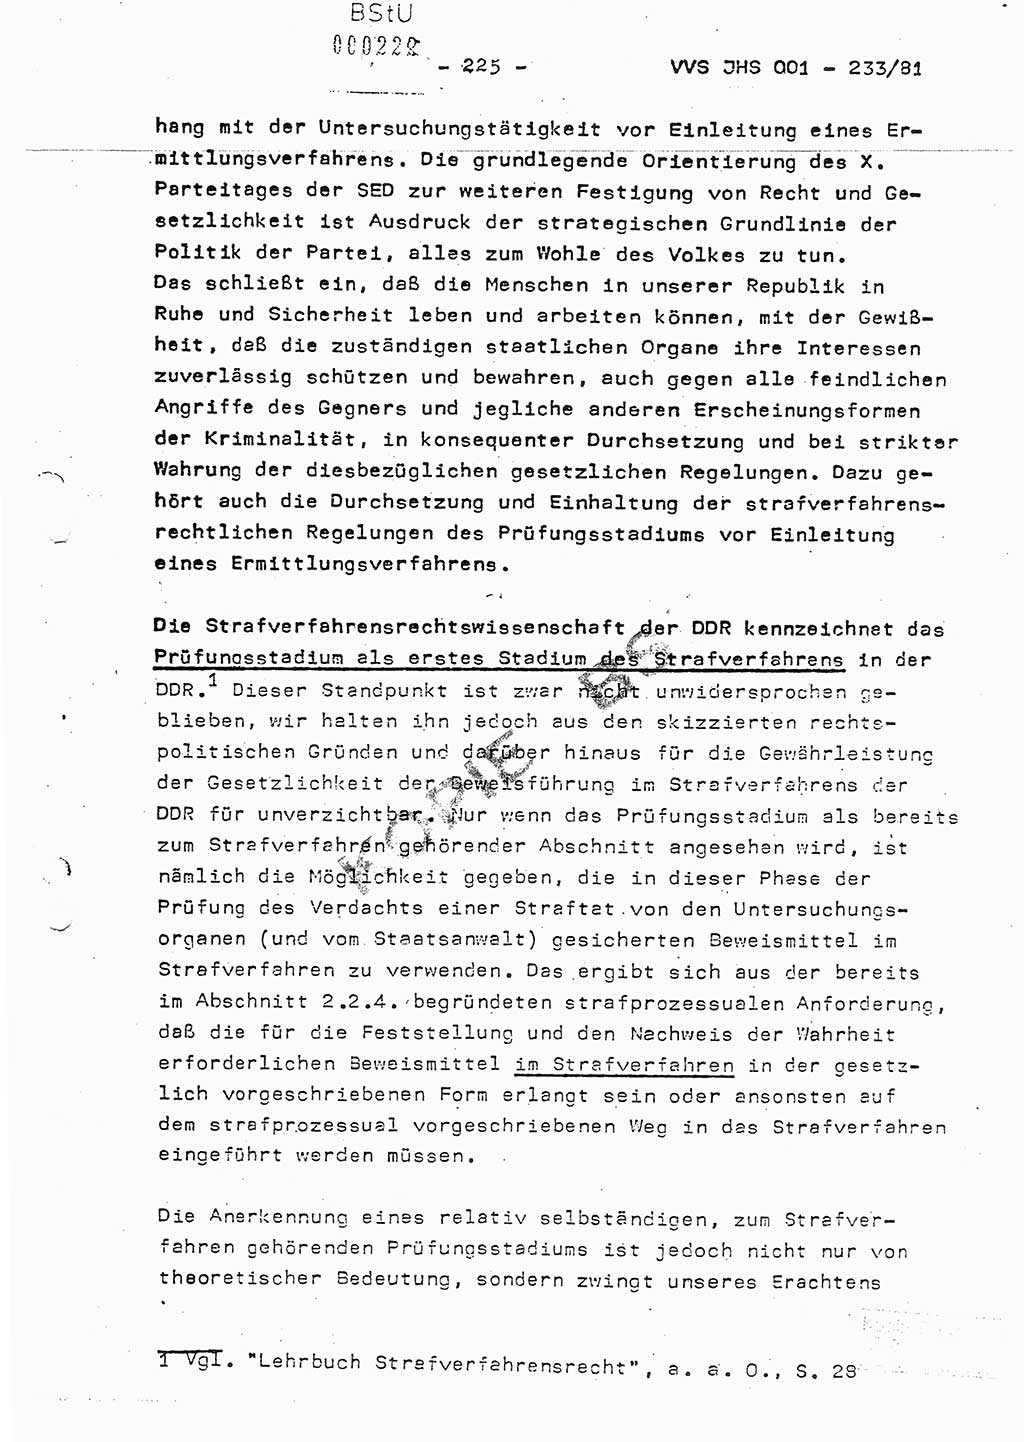 Dissertation Oberstleutnant Horst Zank (JHS), Oberstleutnant Dr. Karl-Heinz Knoblauch (JHS), Oberstleutnant Gustav-Adolf Kowalewski (HA Ⅸ), Oberstleutnant Wolfgang Plötner (HA Ⅸ), Ministerium für Staatssicherheit (MfS) [Deutsche Demokratische Republik (DDR)], Juristische Hochschule (JHS), Vertrauliche Verschlußsache (VVS) o001-233/81, Potsdam 1981, Blatt 225 (Diss. MfS DDR JHS VVS o001-233/81 1981, Bl. 225)